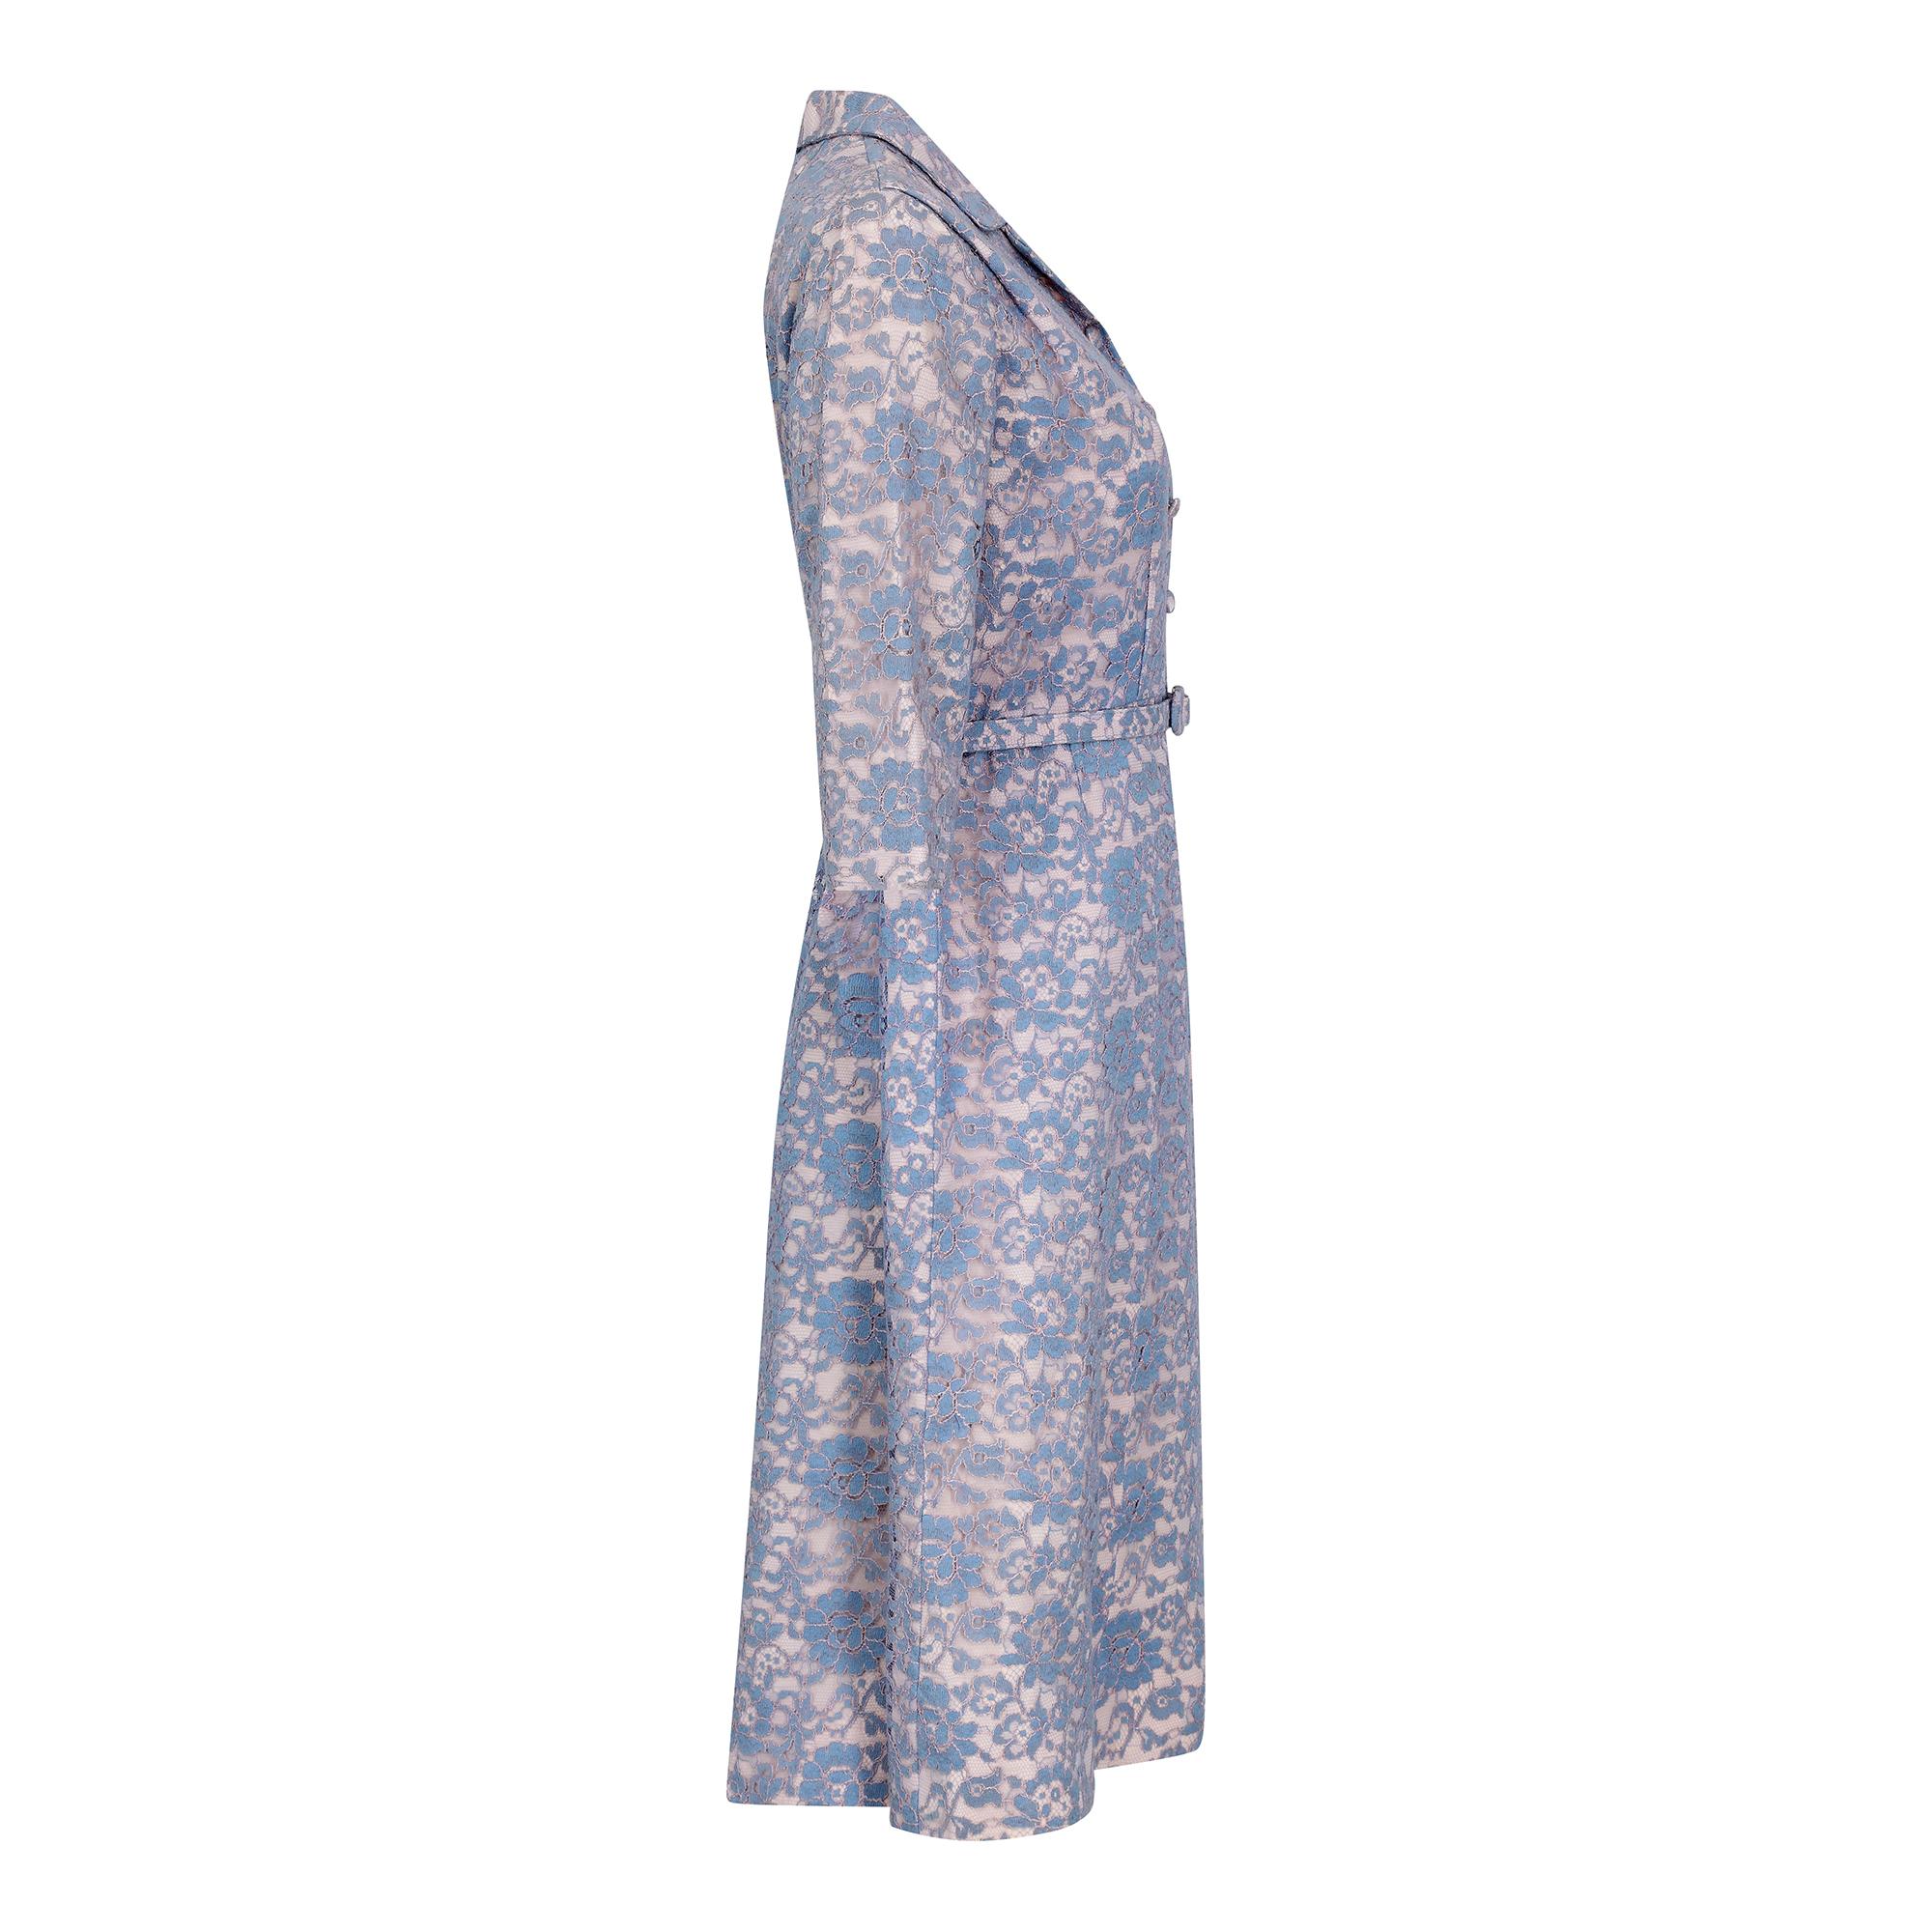 Original 1950er oder frühe 1960er Jahre blush satin & floral mauve / blue lace belted tea dress.  Das Kleid ist im klassischen Hemd-Waist-Stil gehalten, hat einen flachen V-Ausschnitt und eine zentrale Knopfleiste mit 4 stoffbezogenen Knöpfen. Das